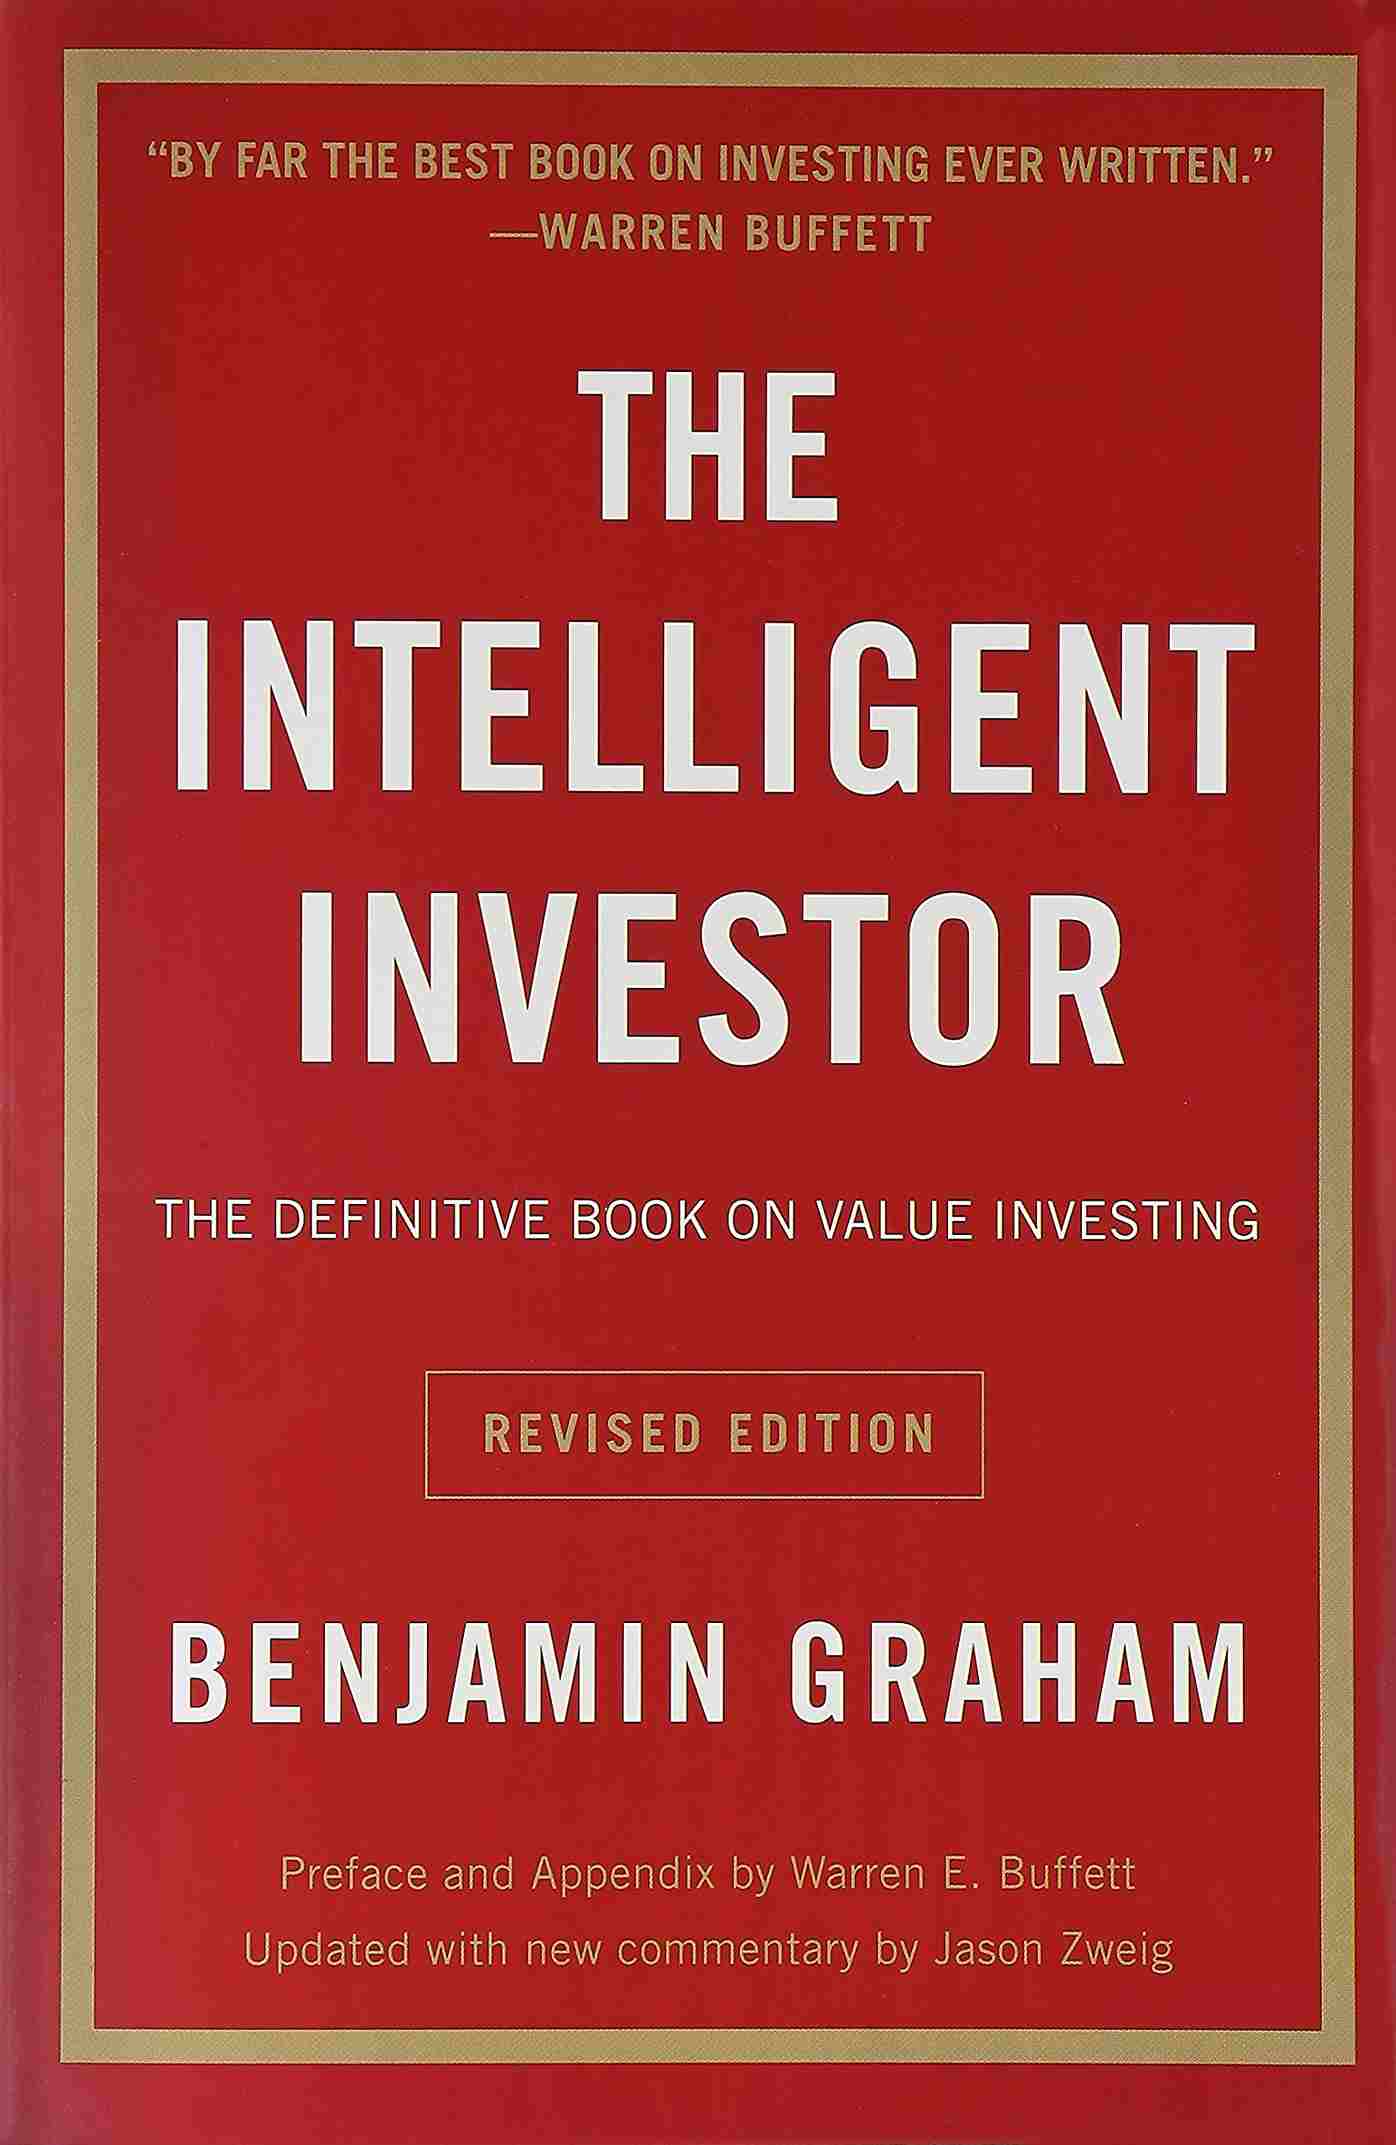 Top 7 Value Investing Books 2